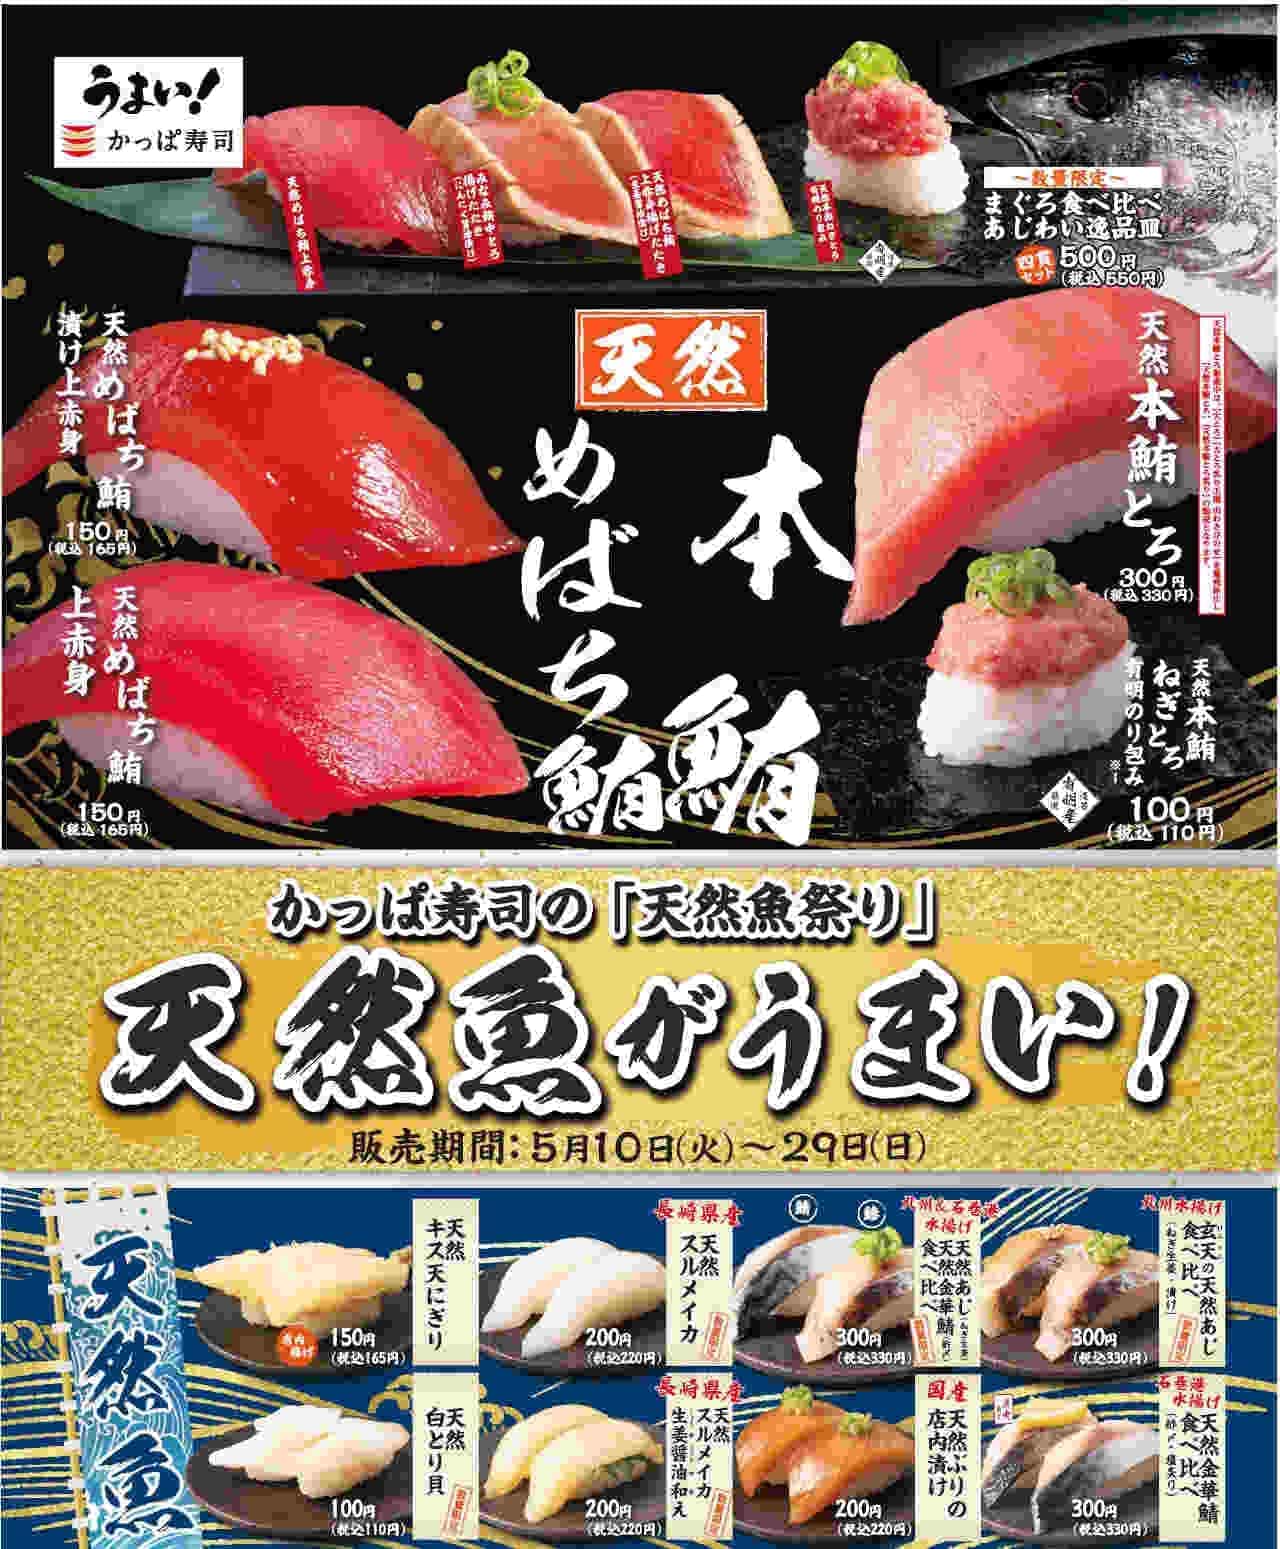 Kappa Sushi "Natural Fish Festival". 